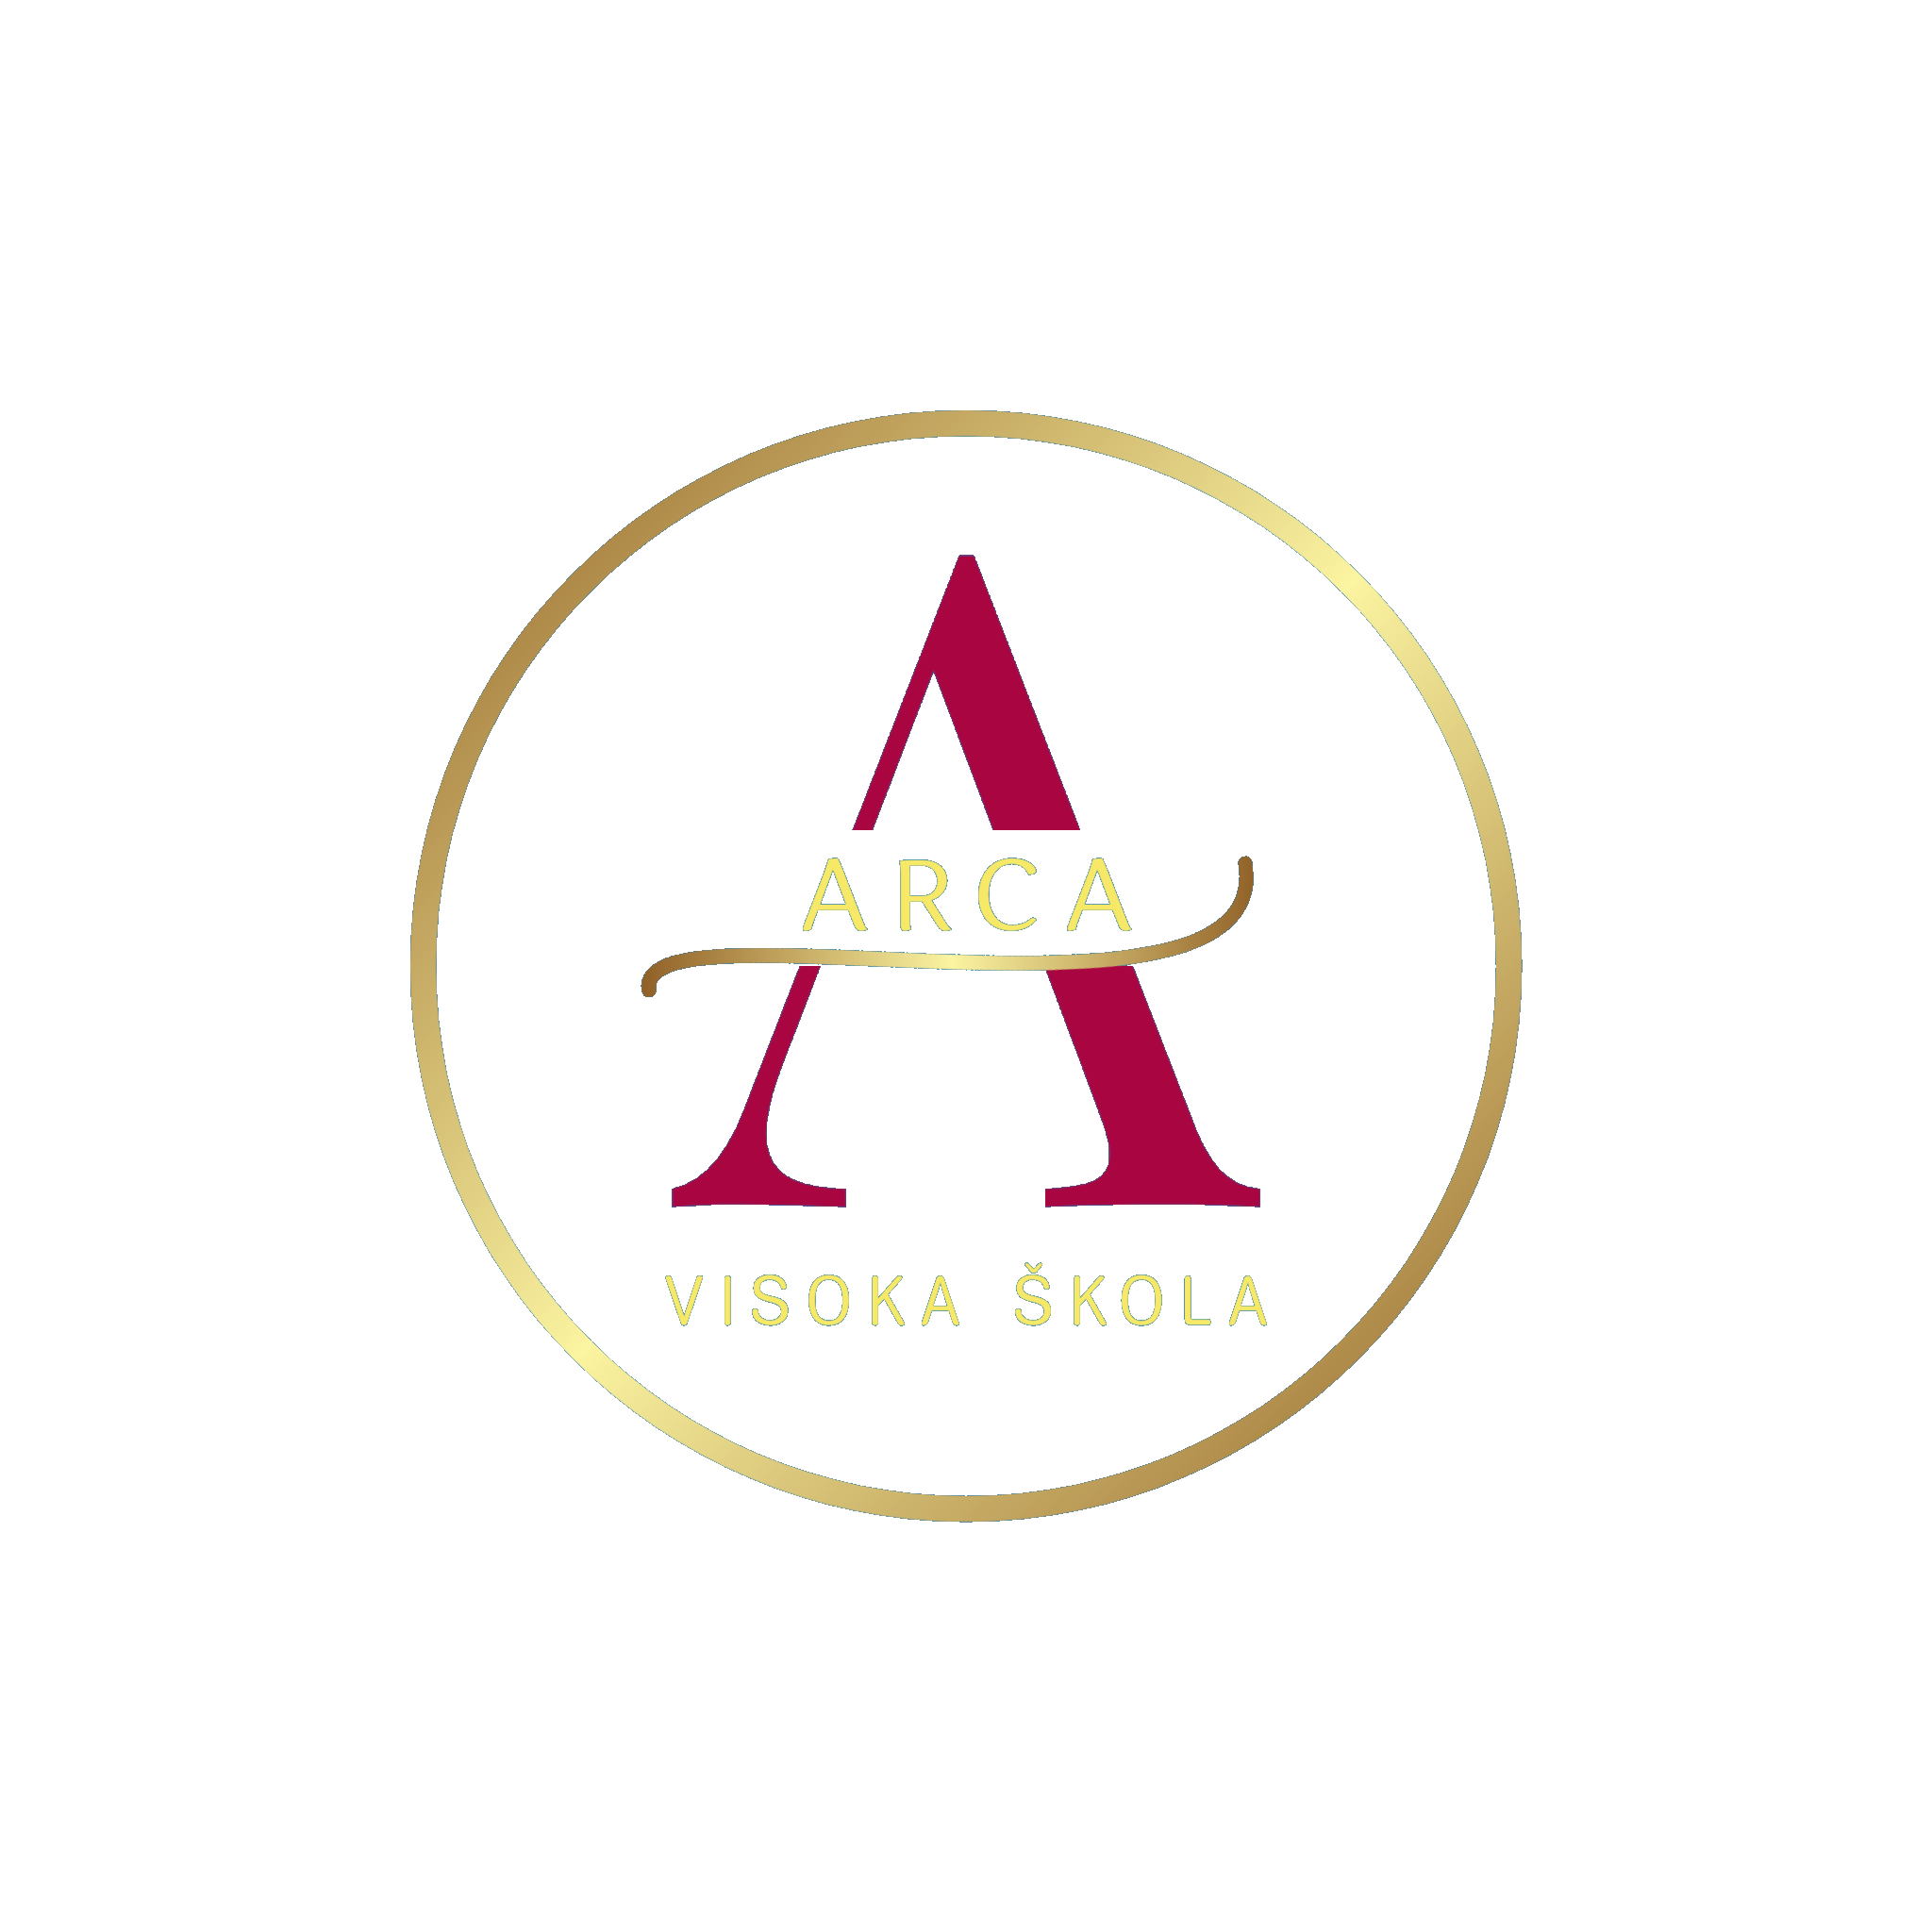 A agência Marketing za sve, de Croatia, ajudou Arca a expandir seus negócios usando SEO e marketing digital